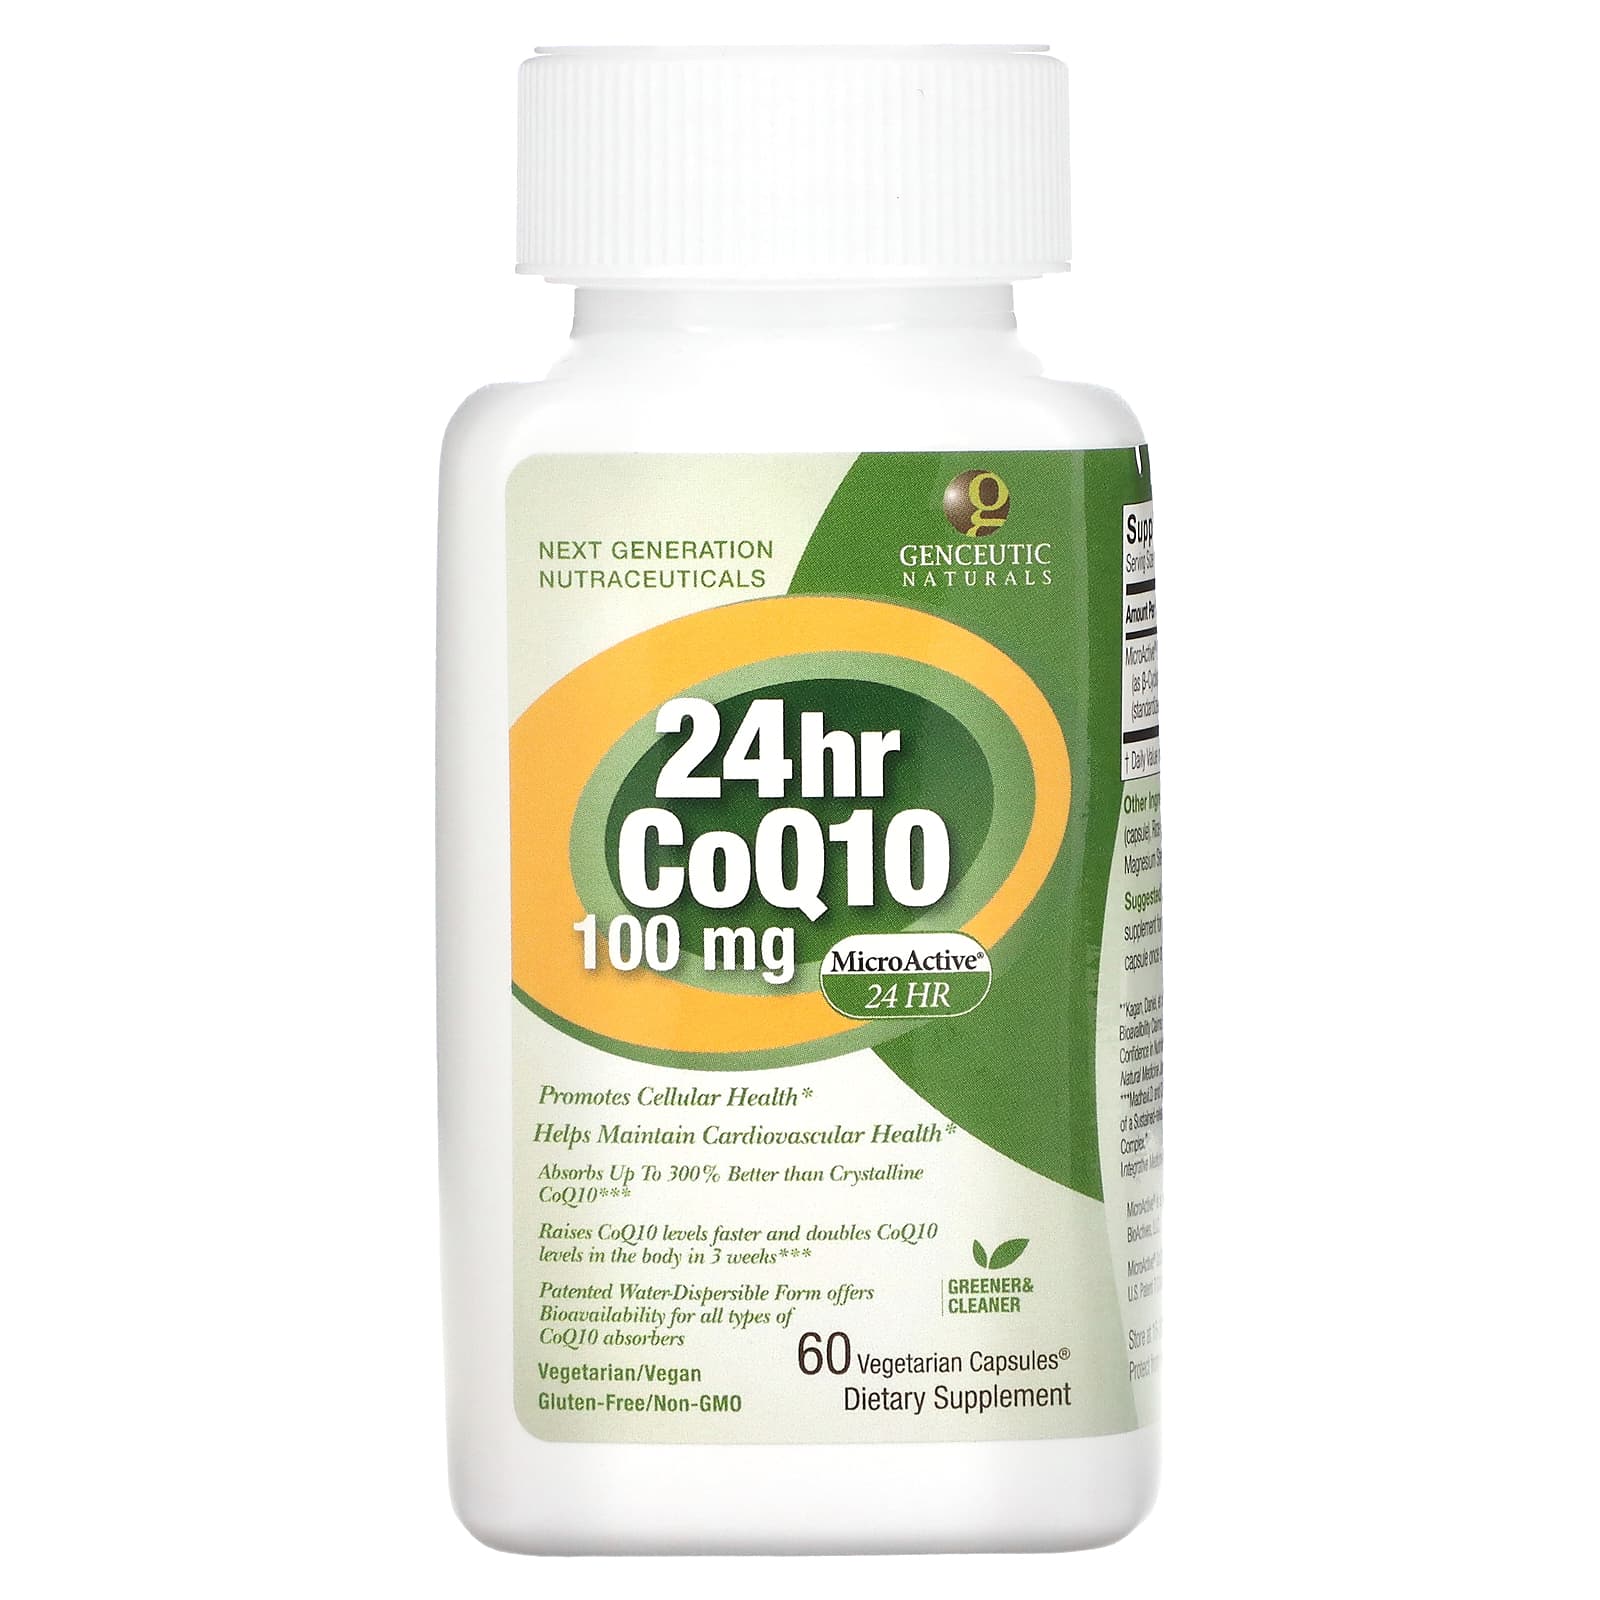 Genceutic Naturals 24hr Coq10 100 Mg 60 Vegetarian Capsules 7821